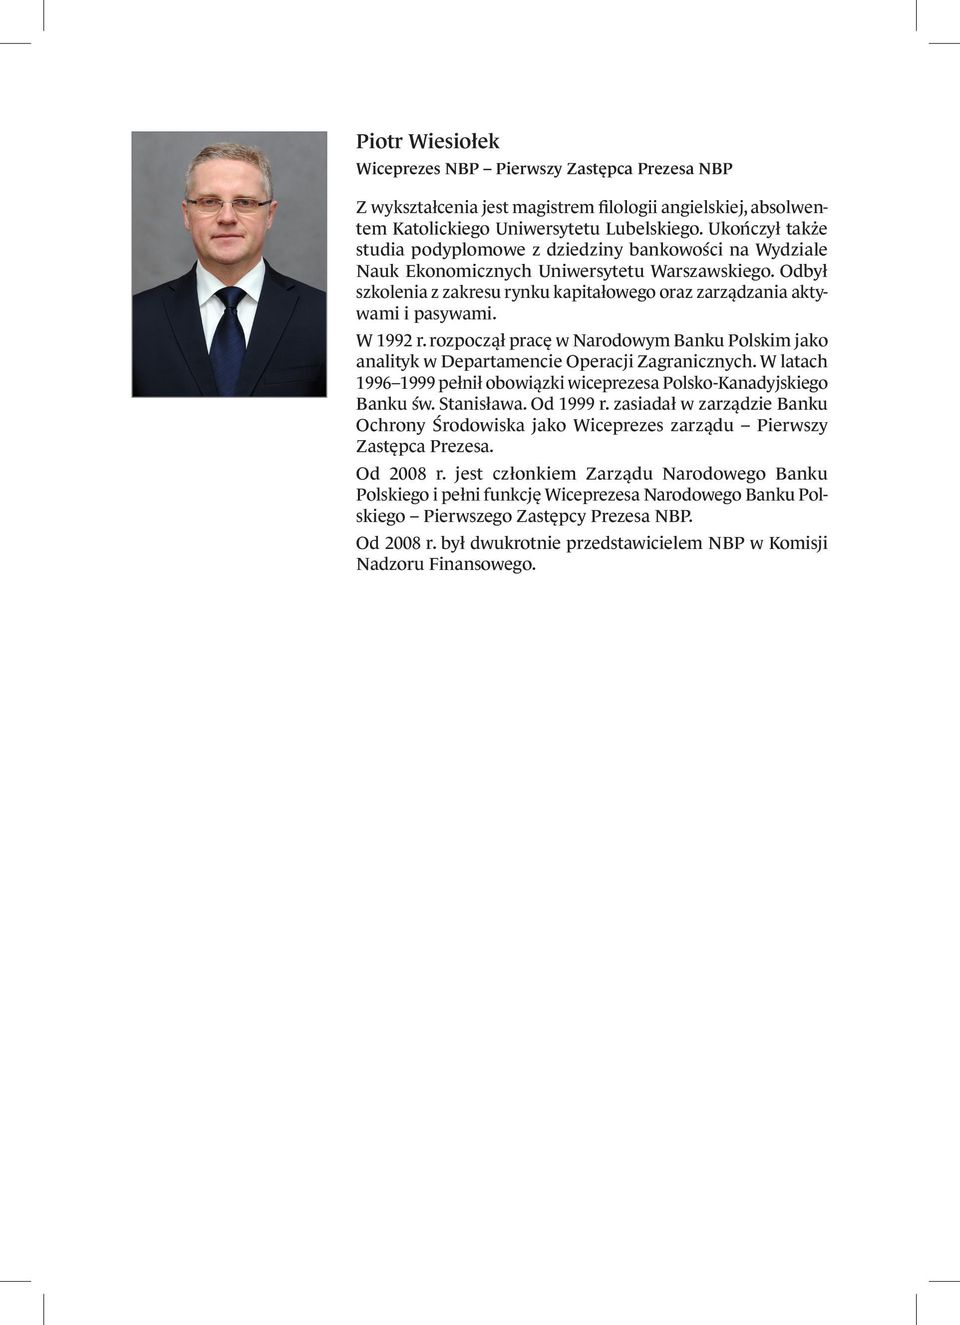 W 1992 r. rozpoczął pracę w Narodowym Banku Polskim jako analityk w Departamencie Operacji Zagranicznych. W latach 1996 1999 pełnił obowiązki wiceprezesa Polsko-Kanadyjskiego Banku św. Stanisława.